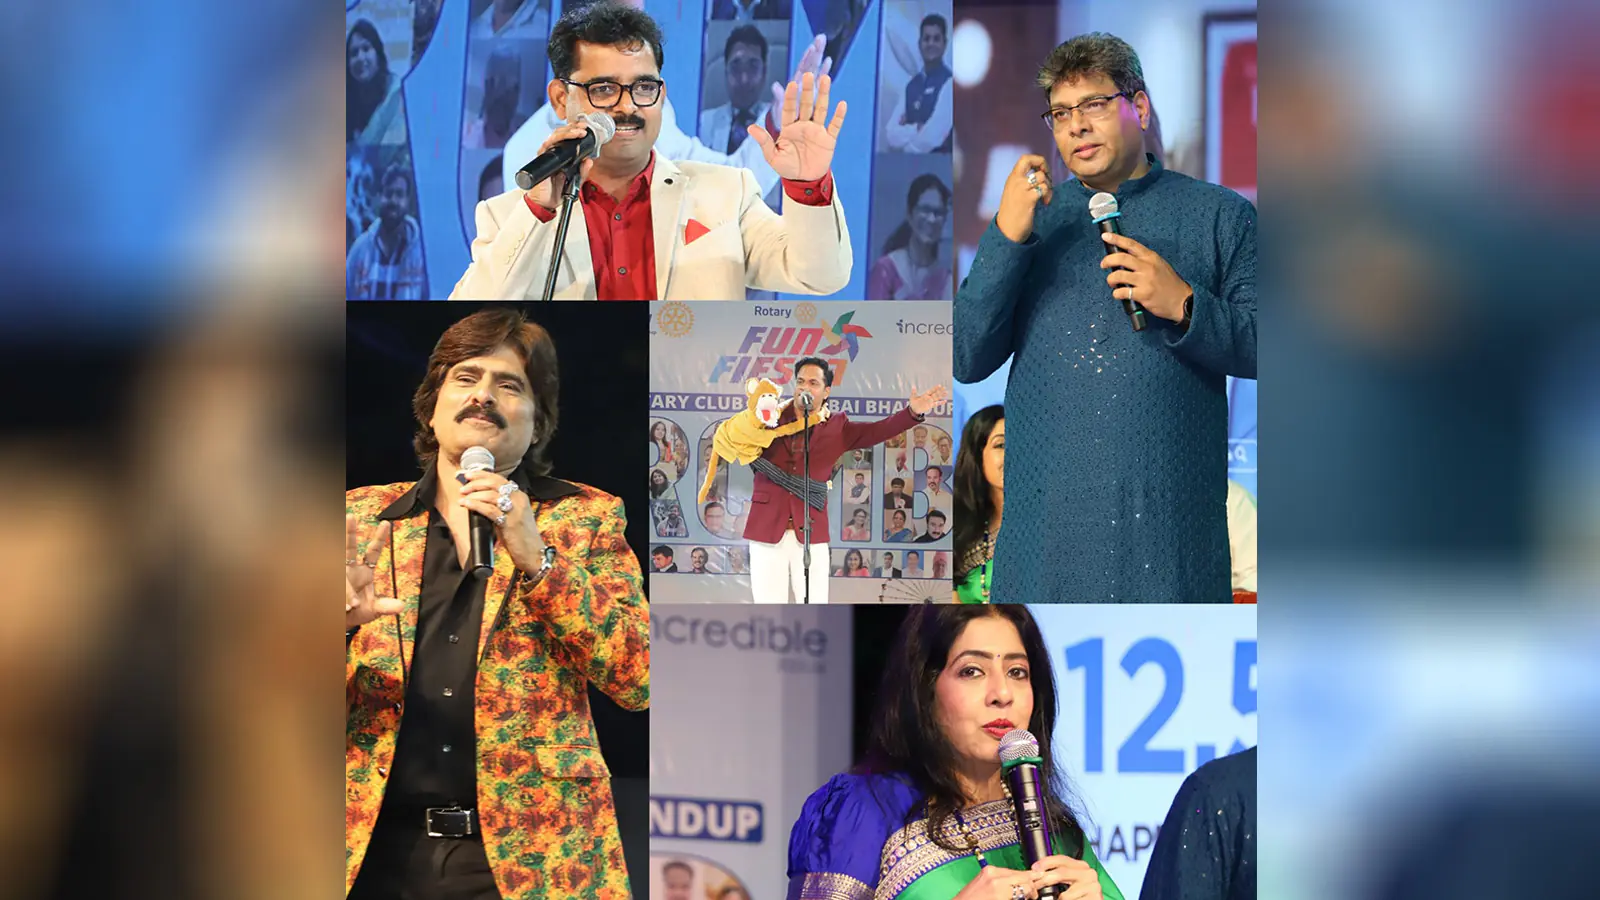 Rotary Club of Mumbai Bhandup Organizes Rotary Fun Fiesta 2023